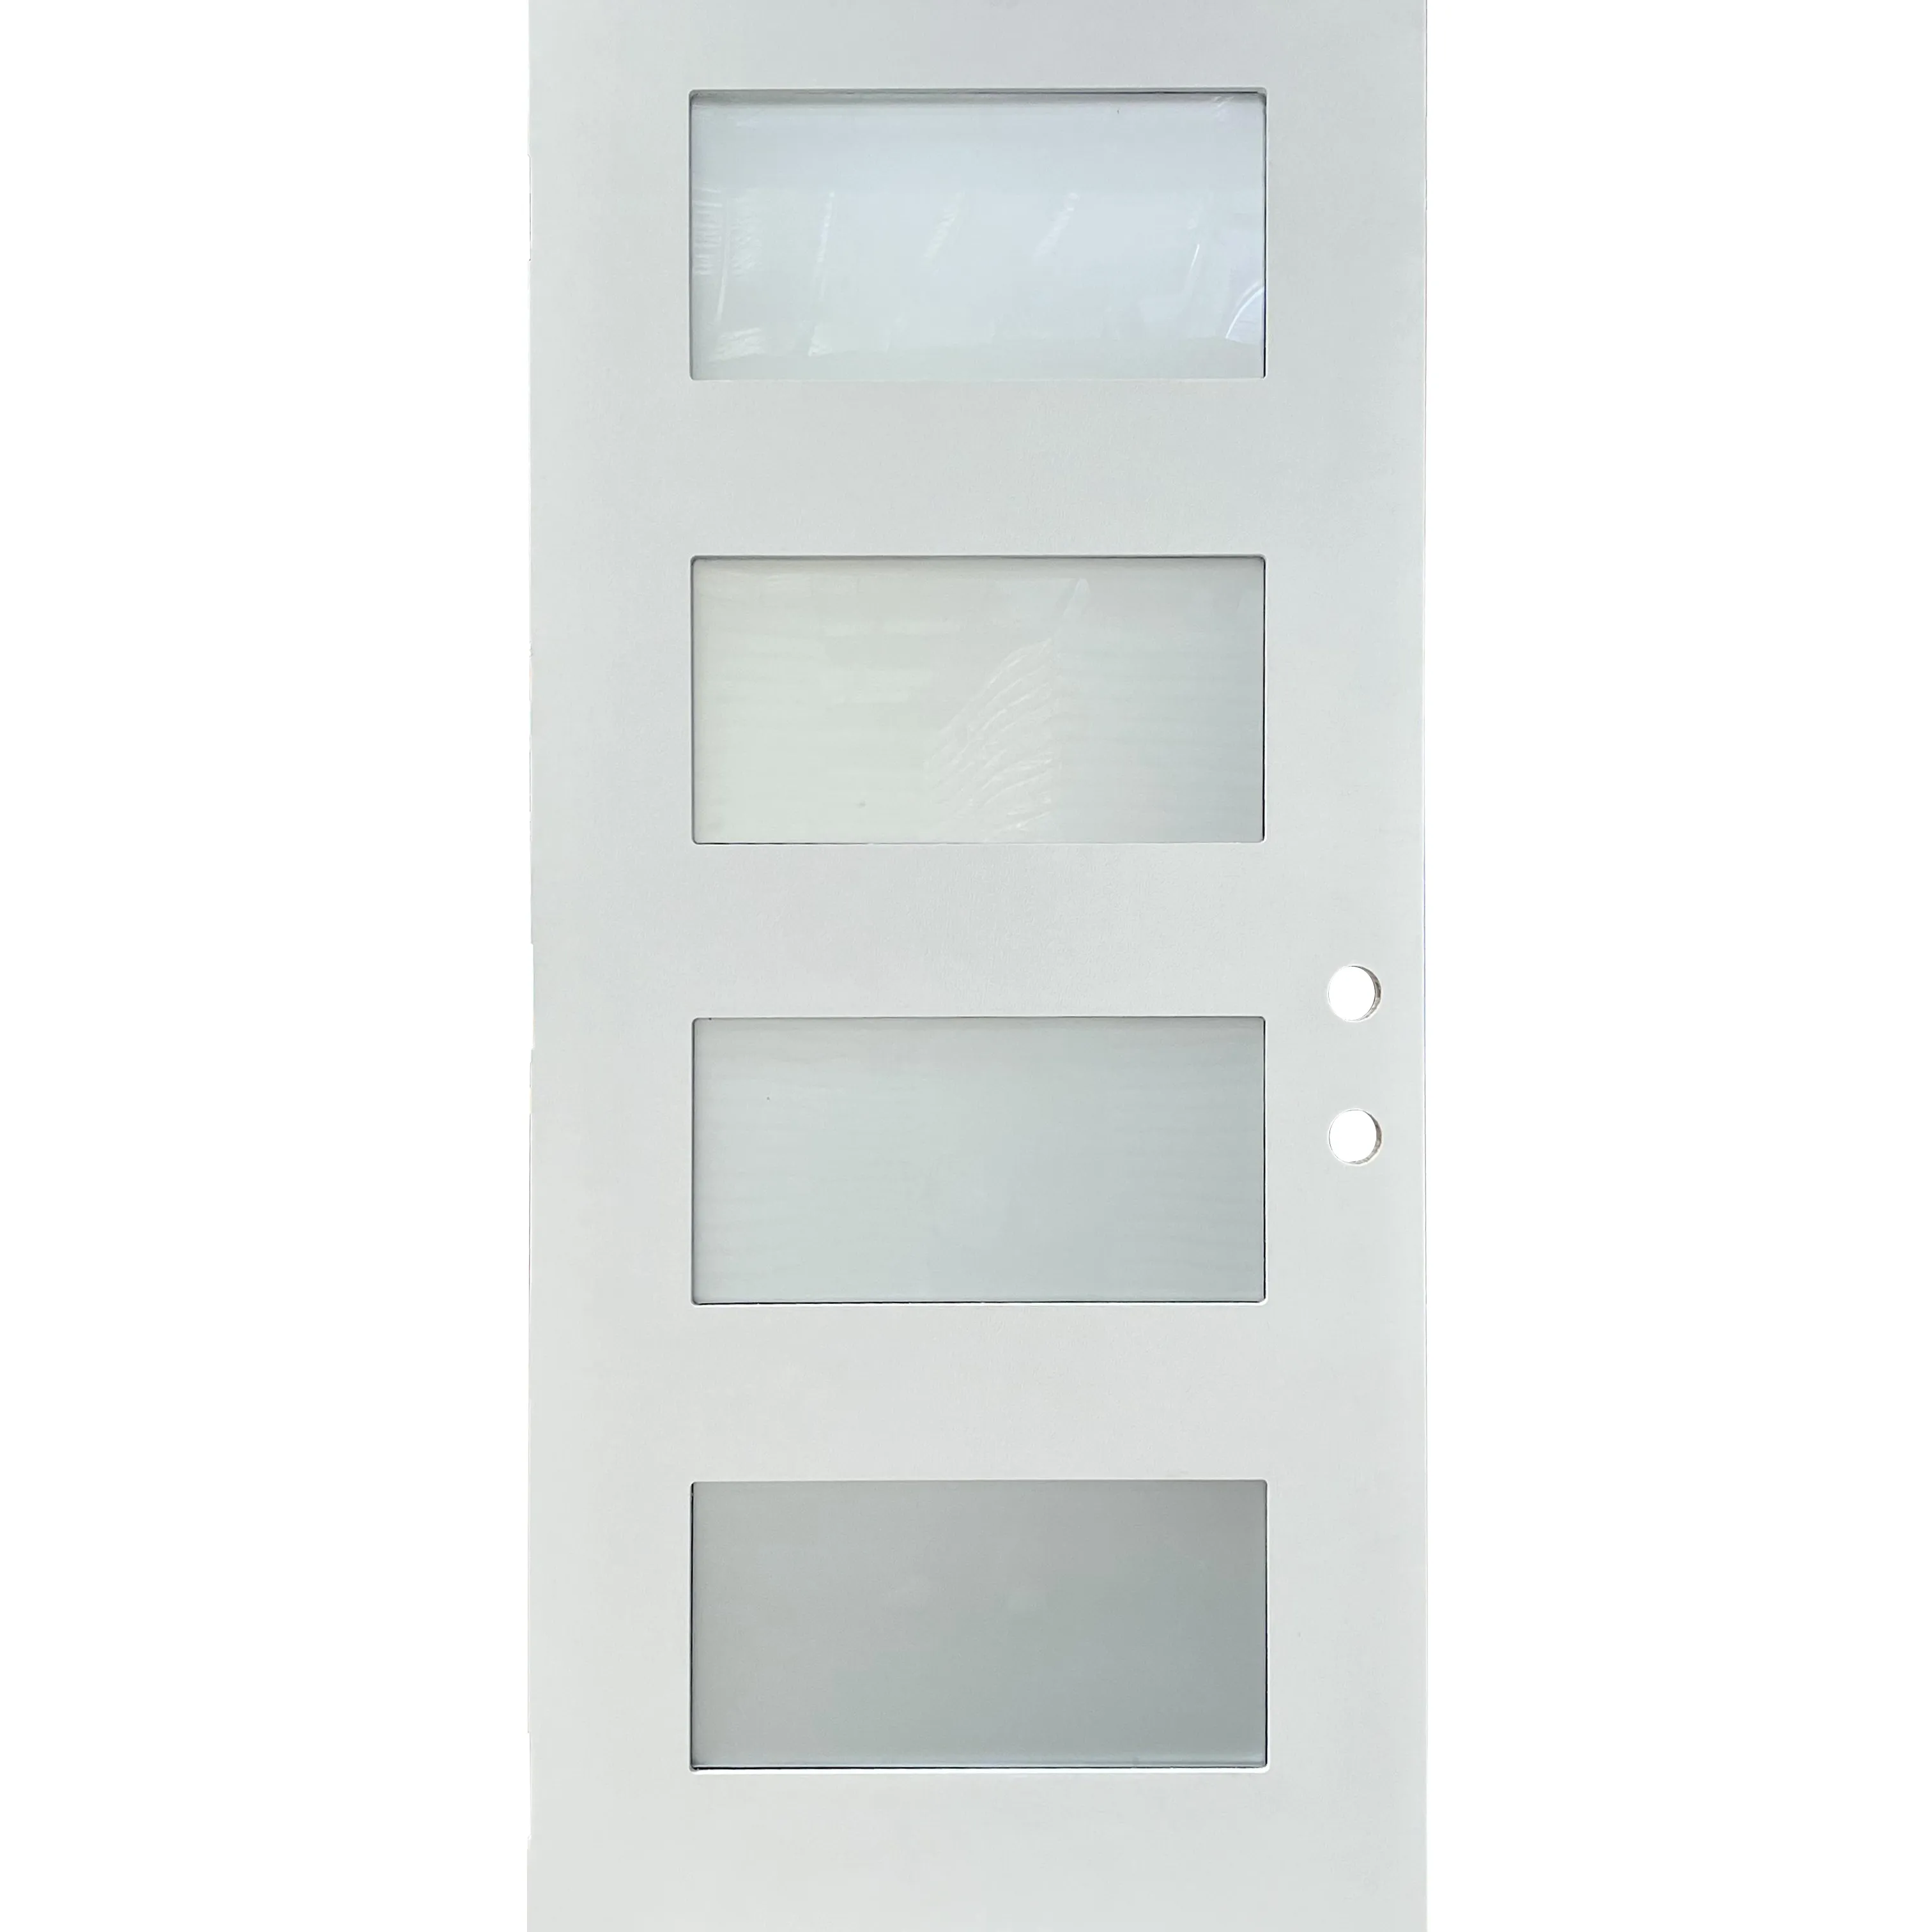 The fangda door of fiberglass door with 3/4 glass and wood grain door panel for smooth textured